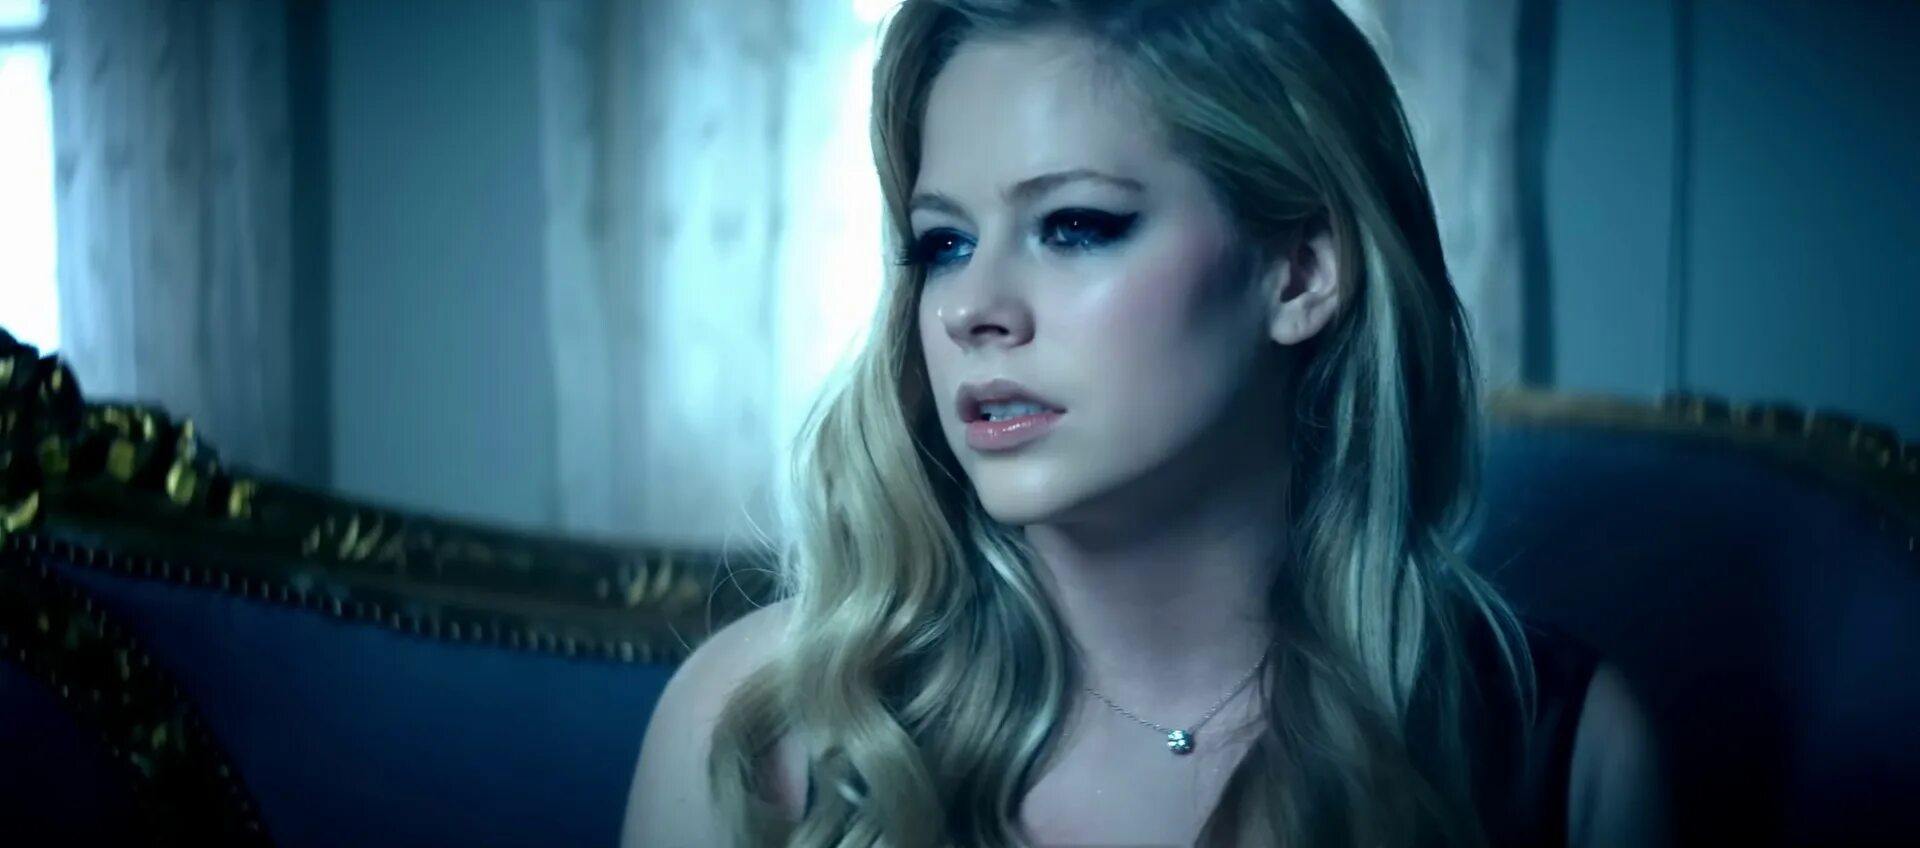 Avril lavigne let go. Аврил Лавин 2022. Аврил Лавин лет ми гоу. Avril Lavigne - Let me go ft. Chad Kroeger. Аврил Лавин первый клип.